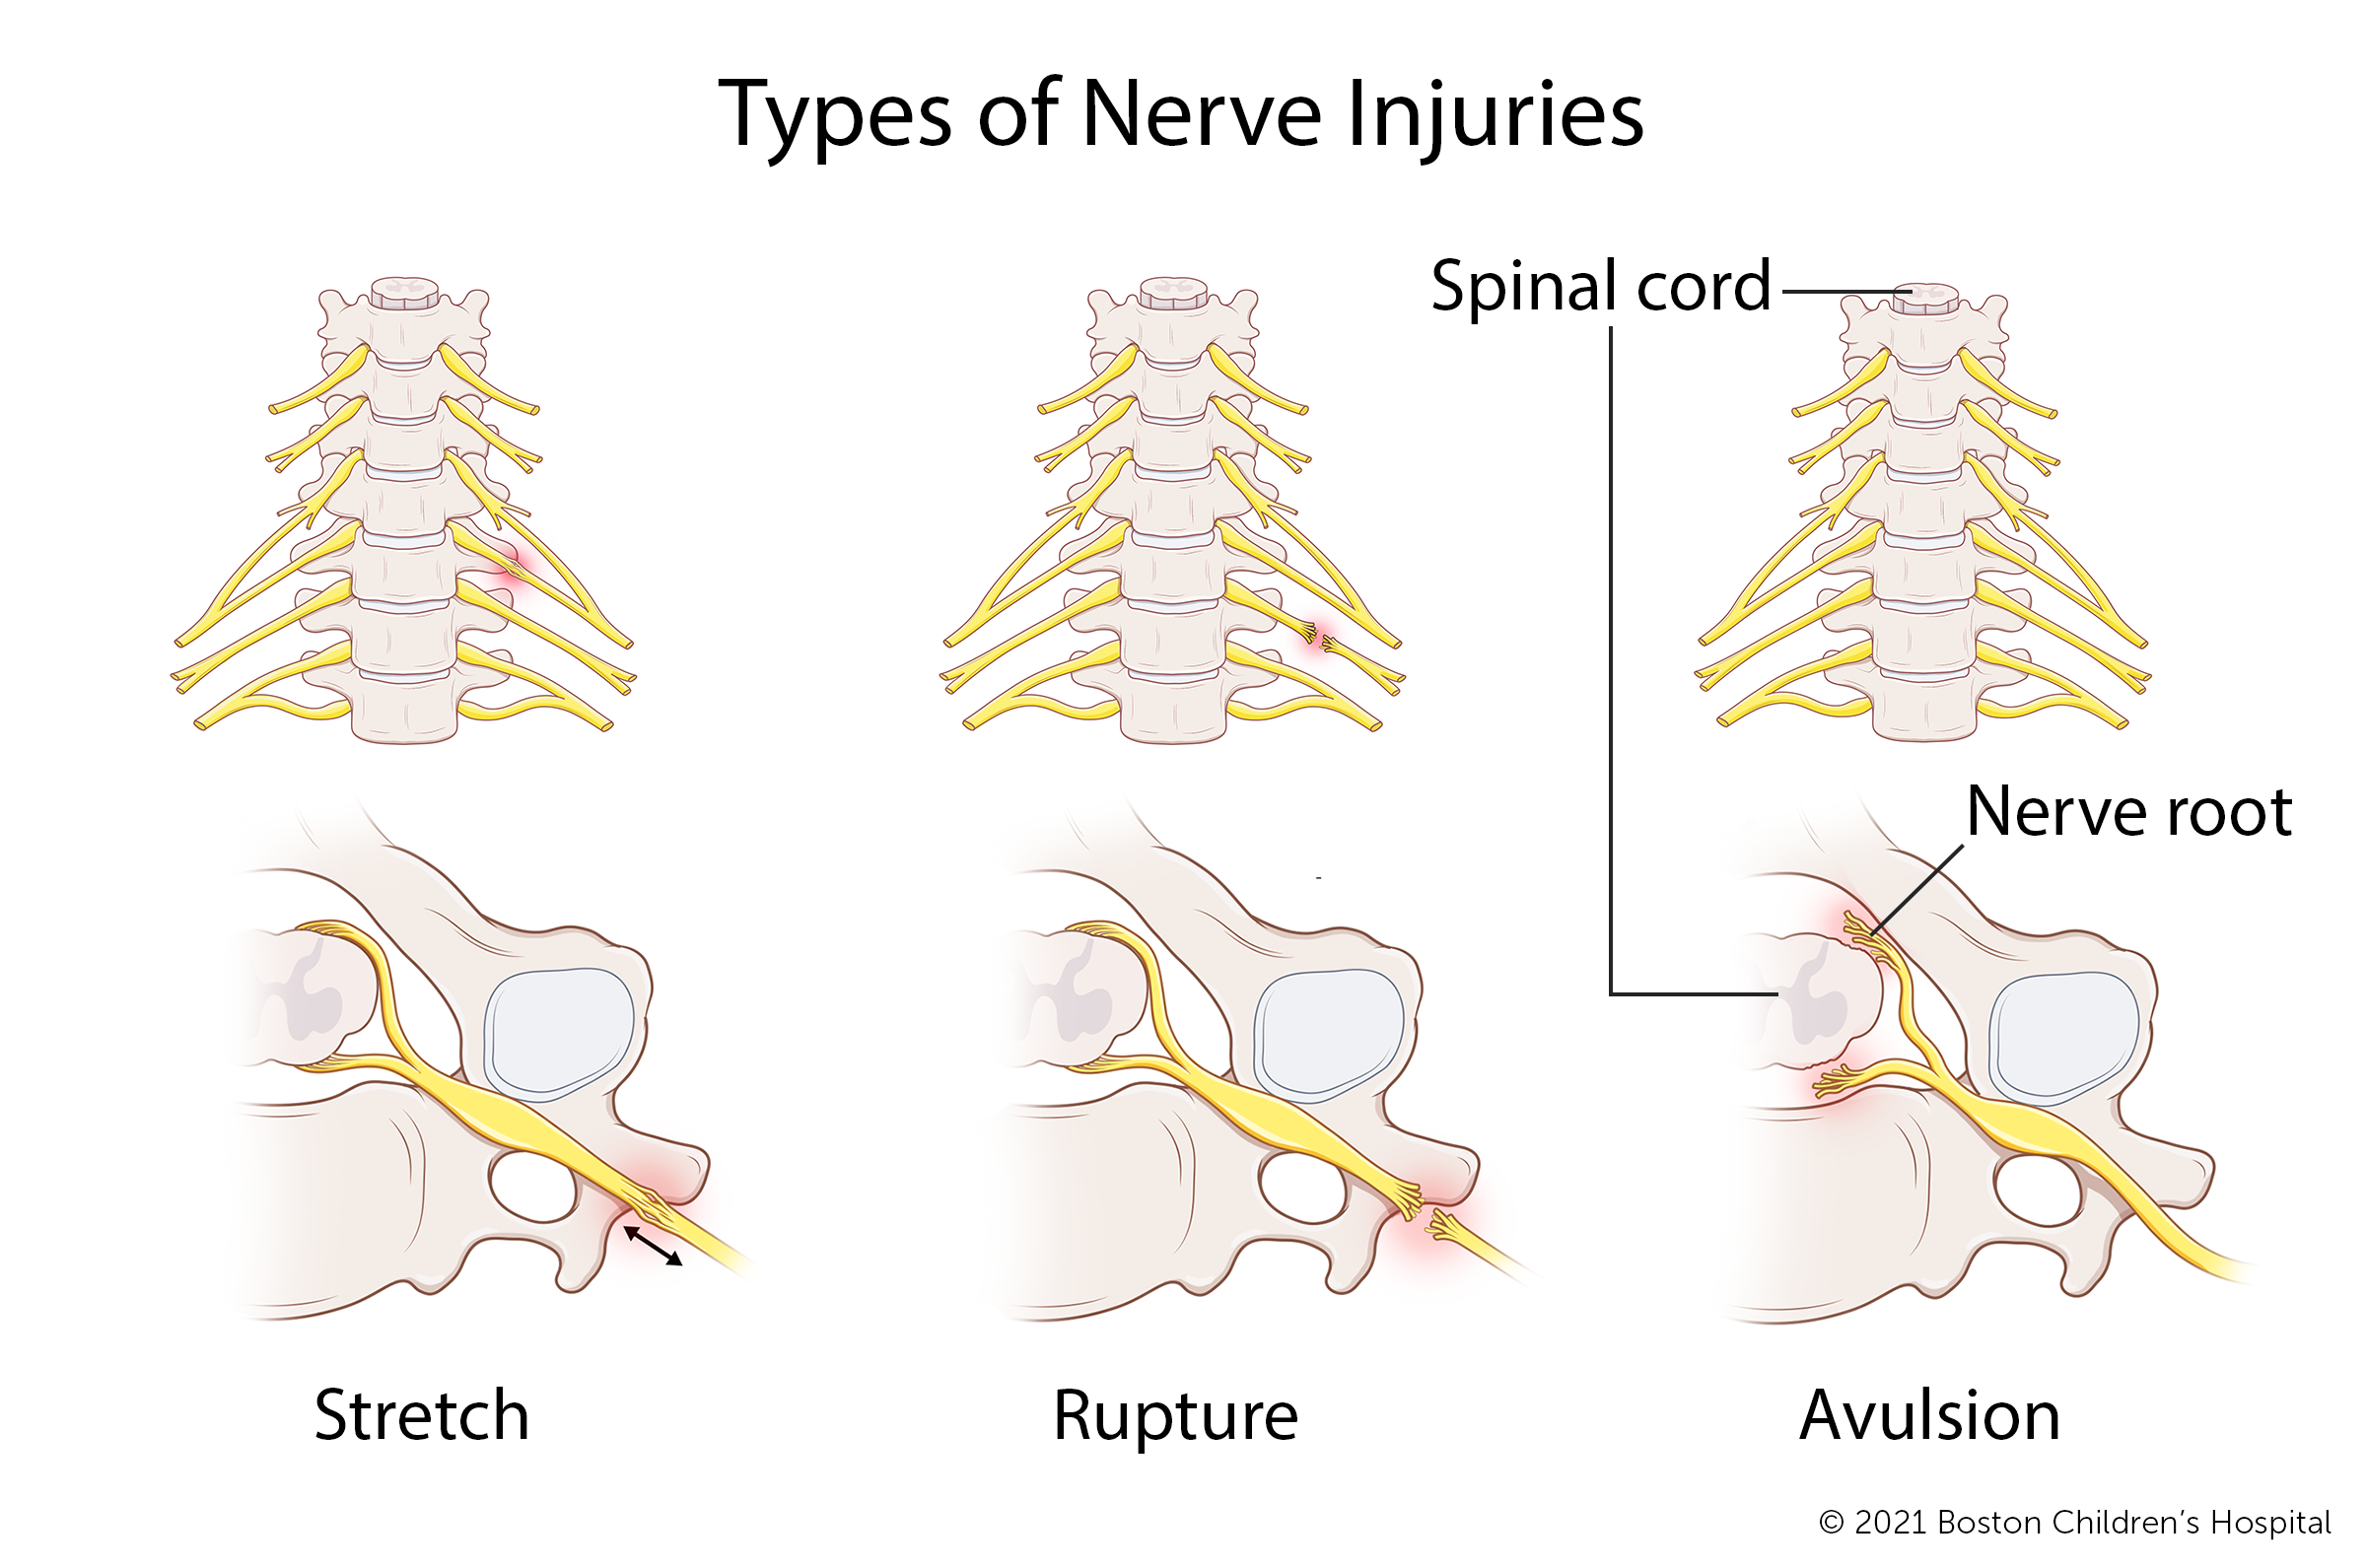 在臂丛伸展性损伤中，神经只是被拉伸，而不是撕裂。在臂丛神经断裂损伤中，神经被撕裂，但仍然附着在脊髓上。在臂丛神经撕脱伤中，神经根已与脊髓分离。